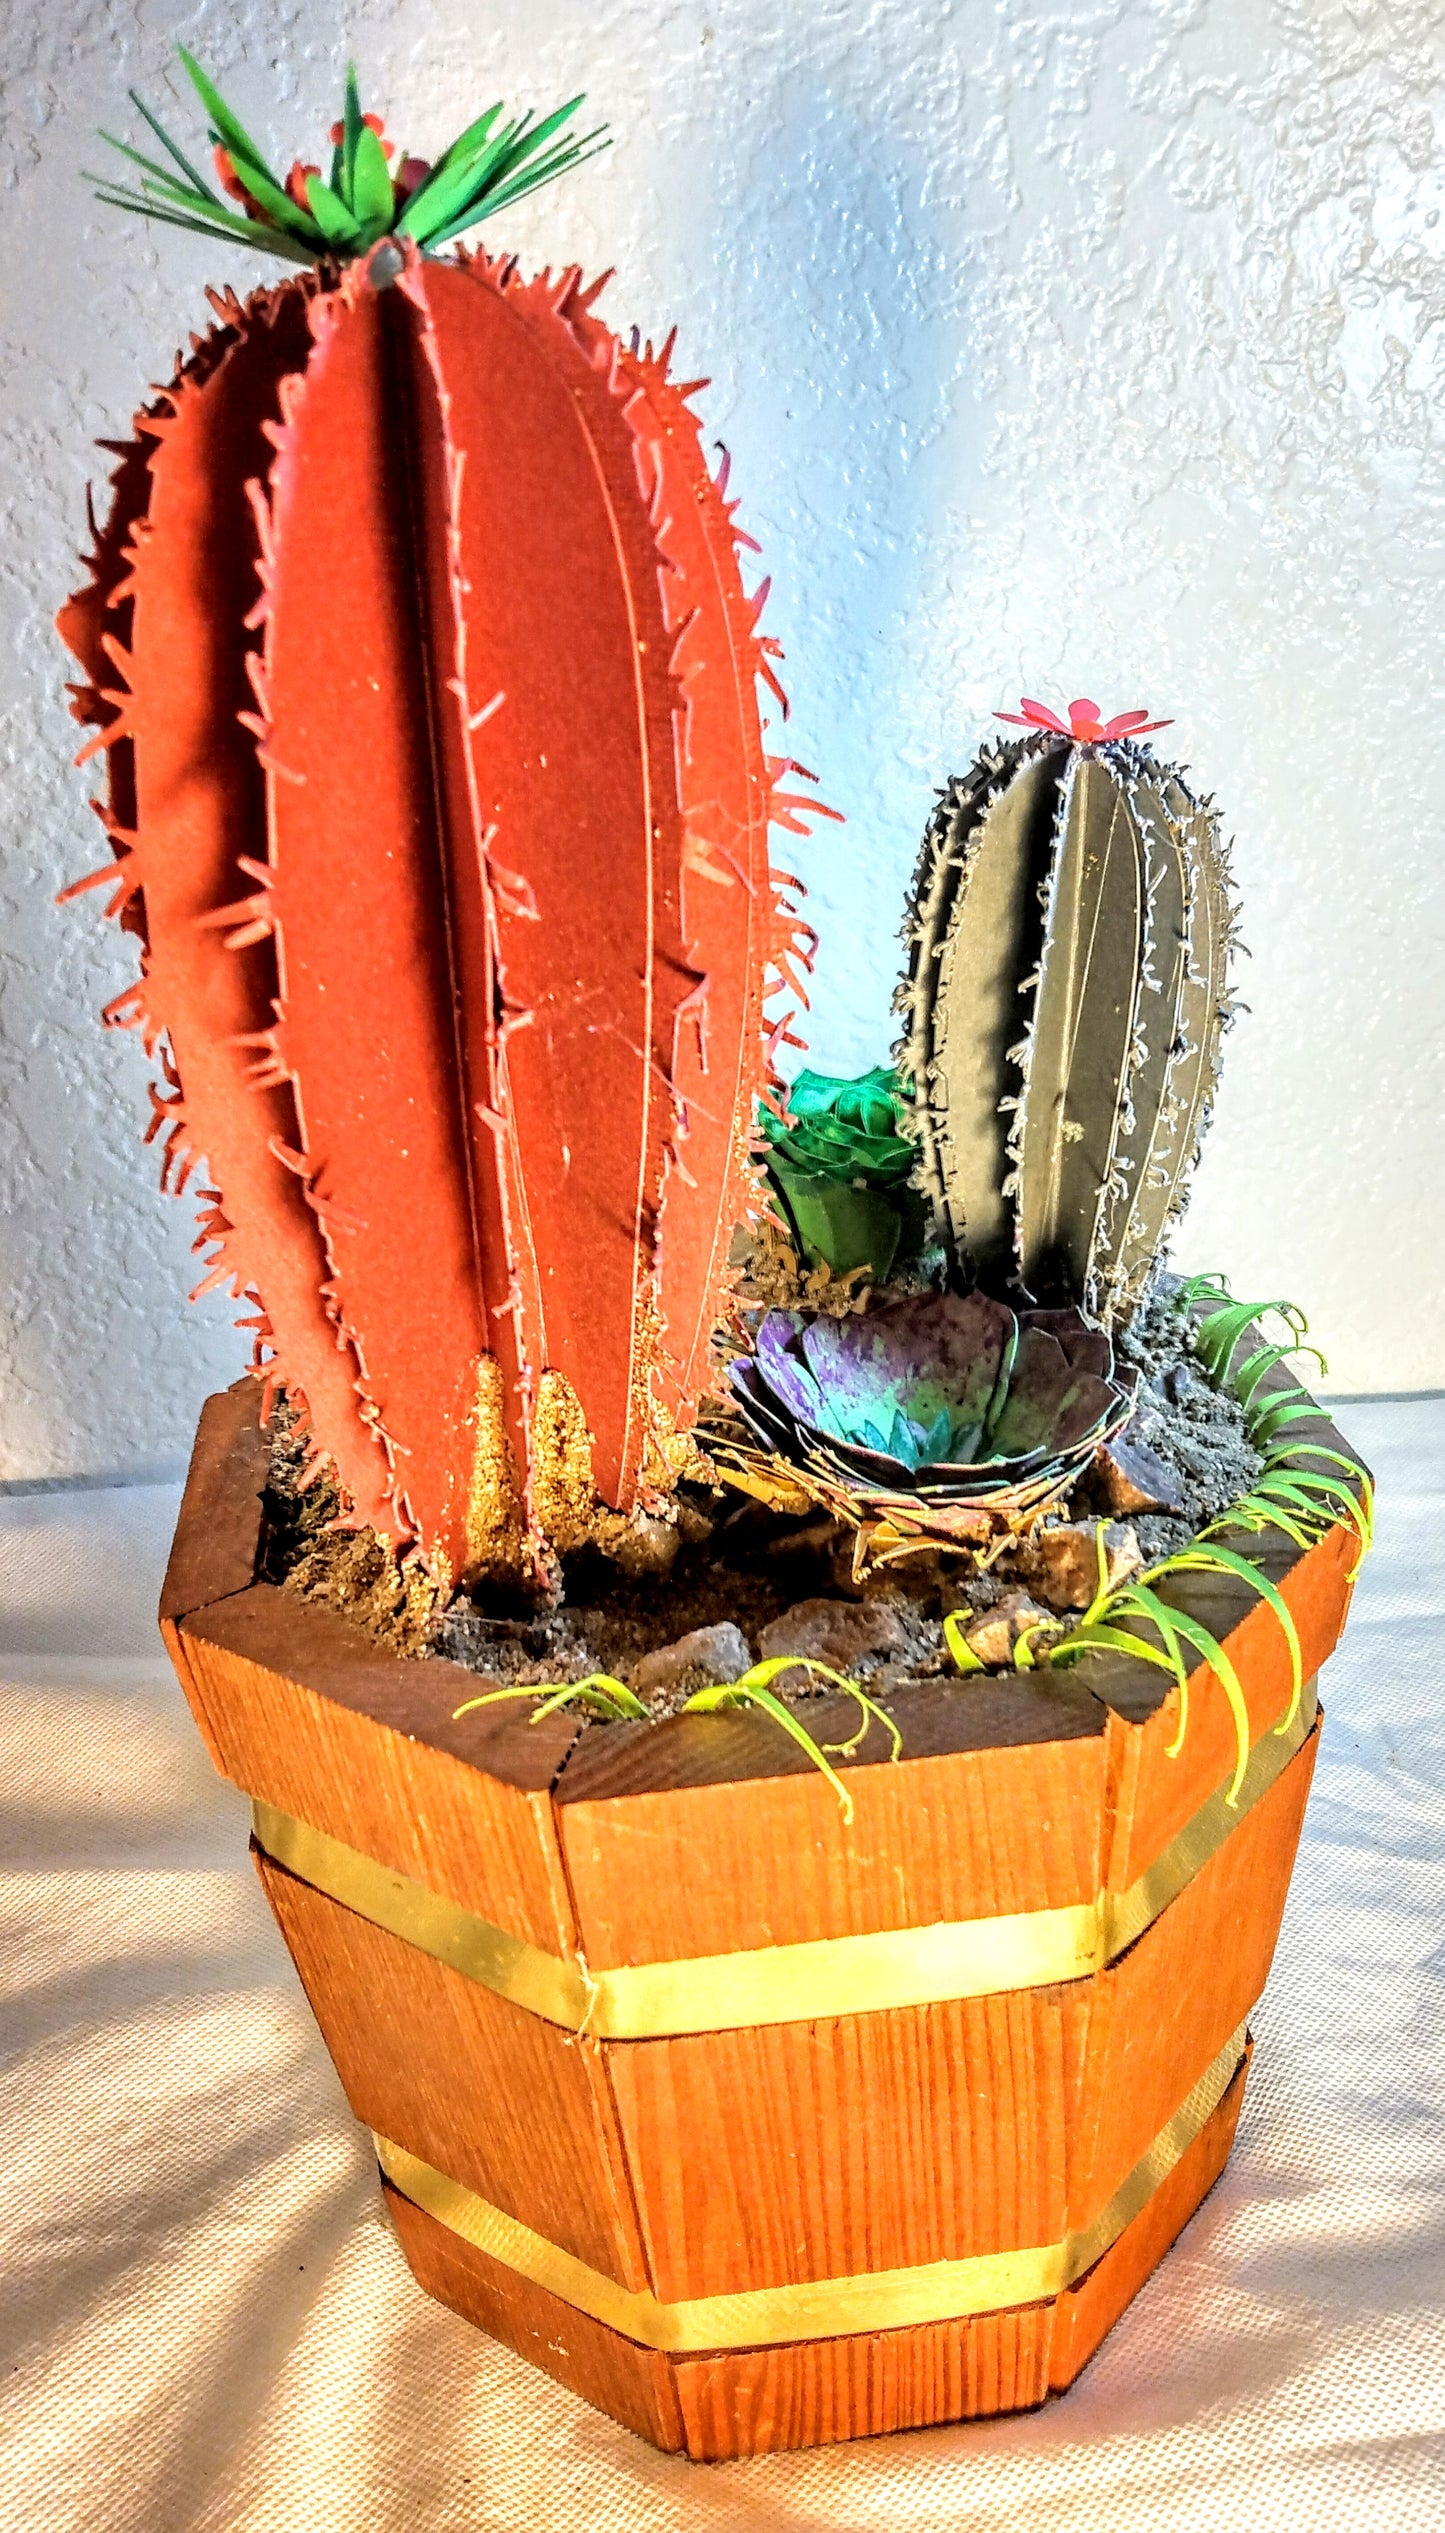 Wooden bucket of cacti